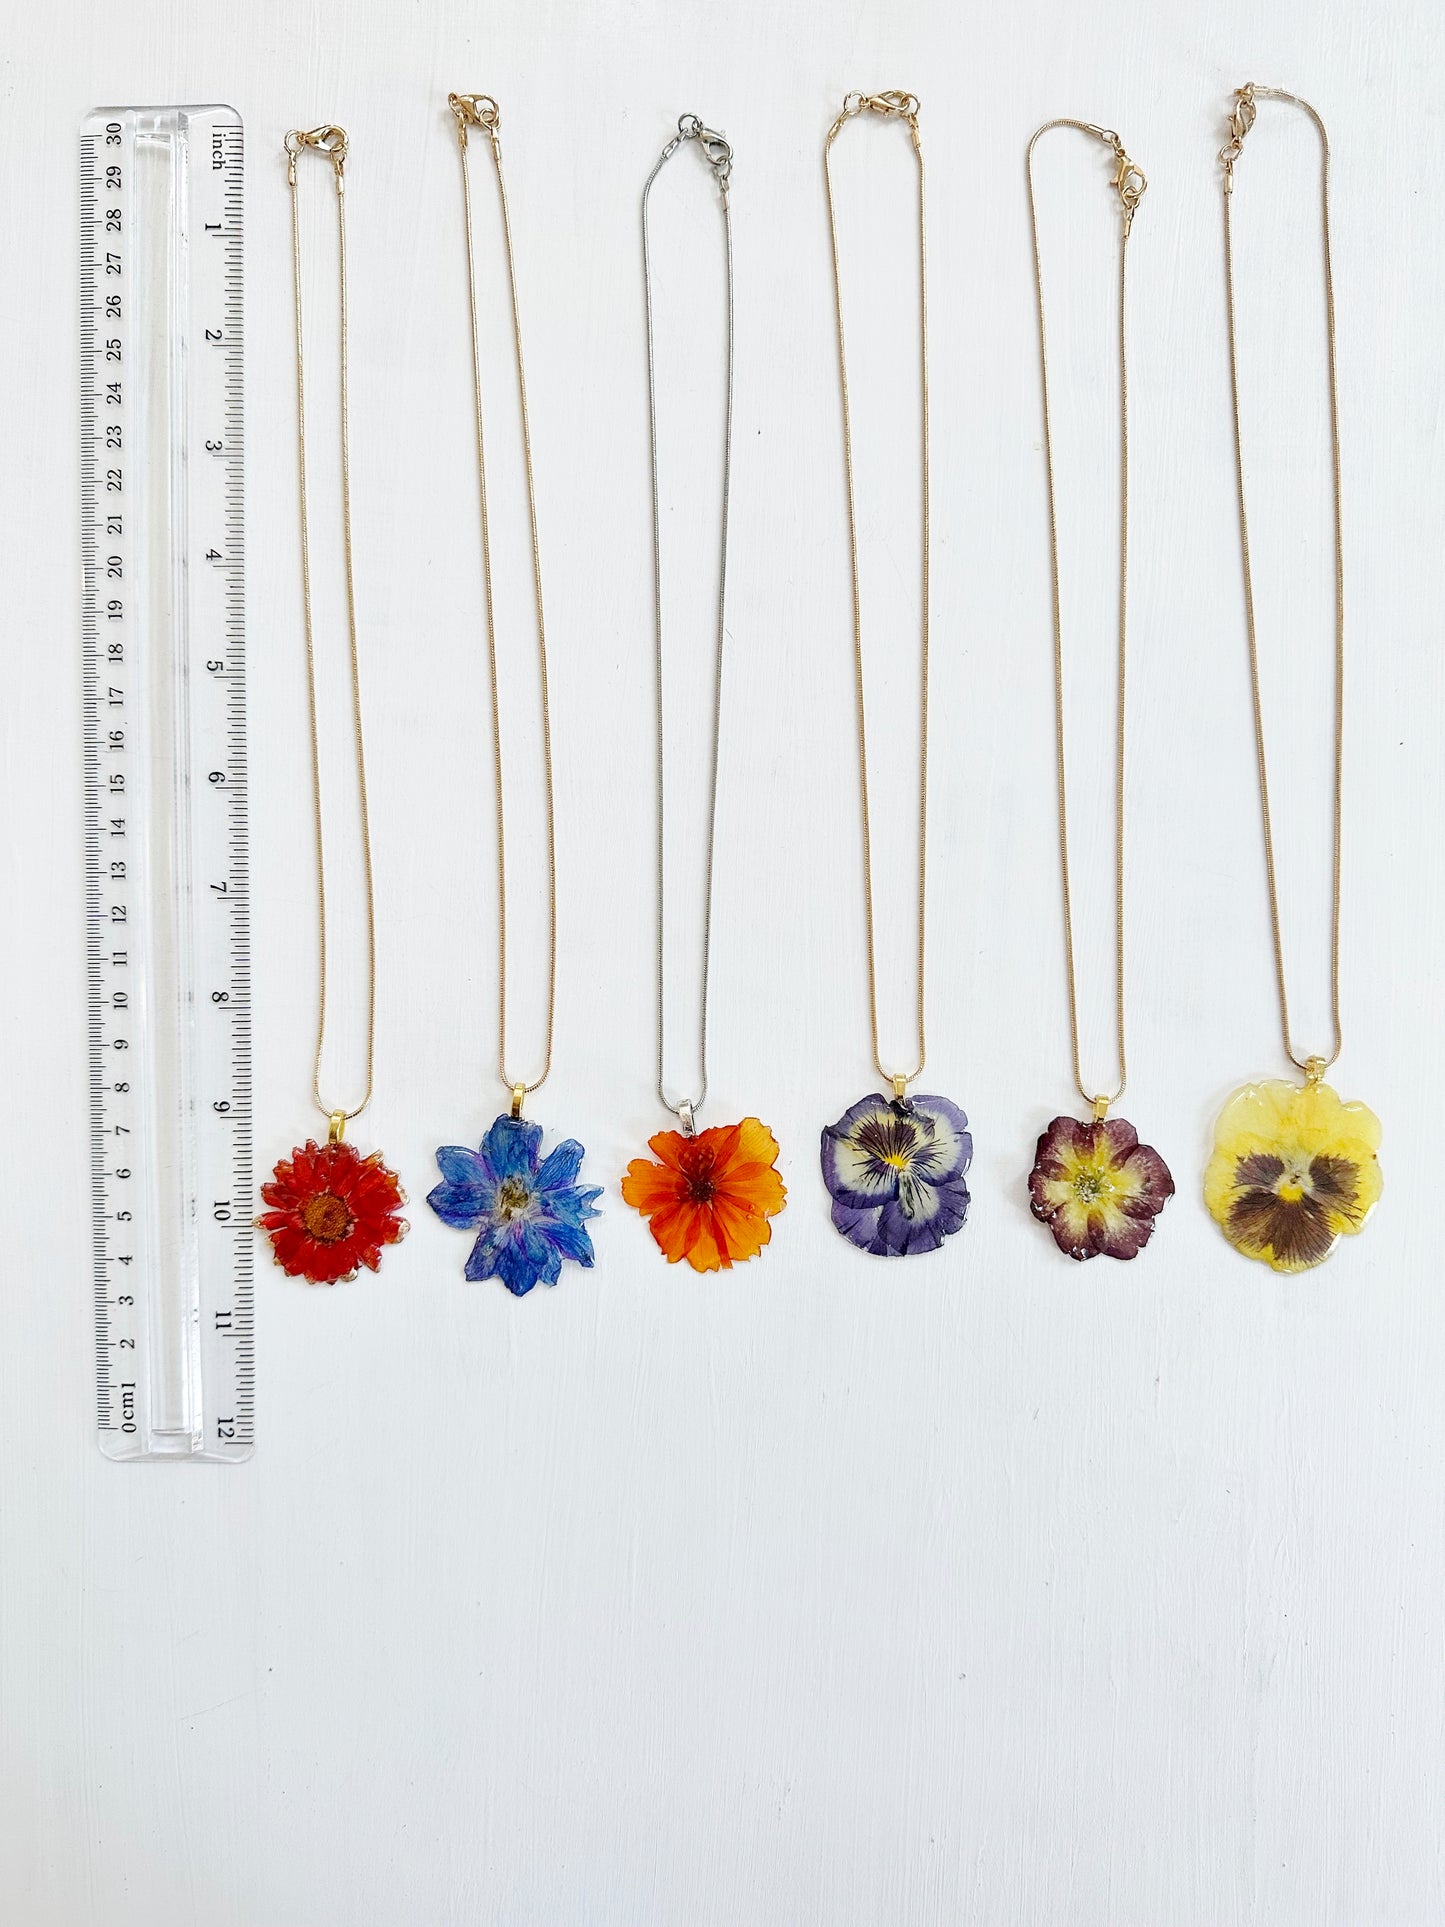 Birth Flower Necklaces